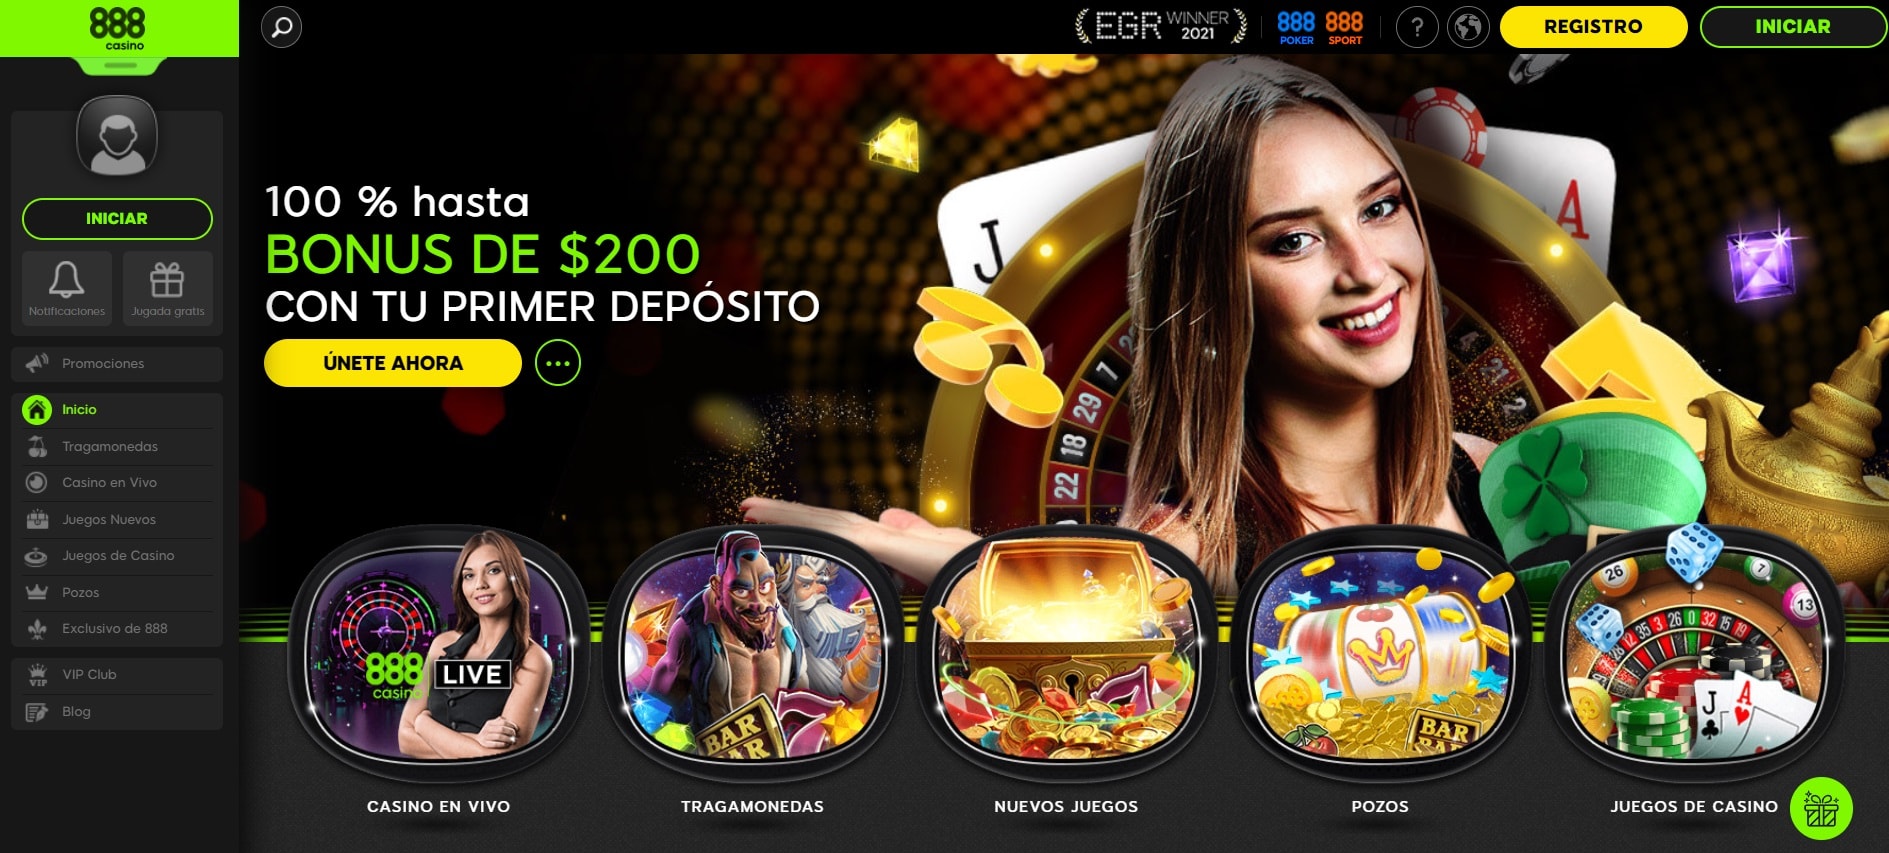 888 casino mexico